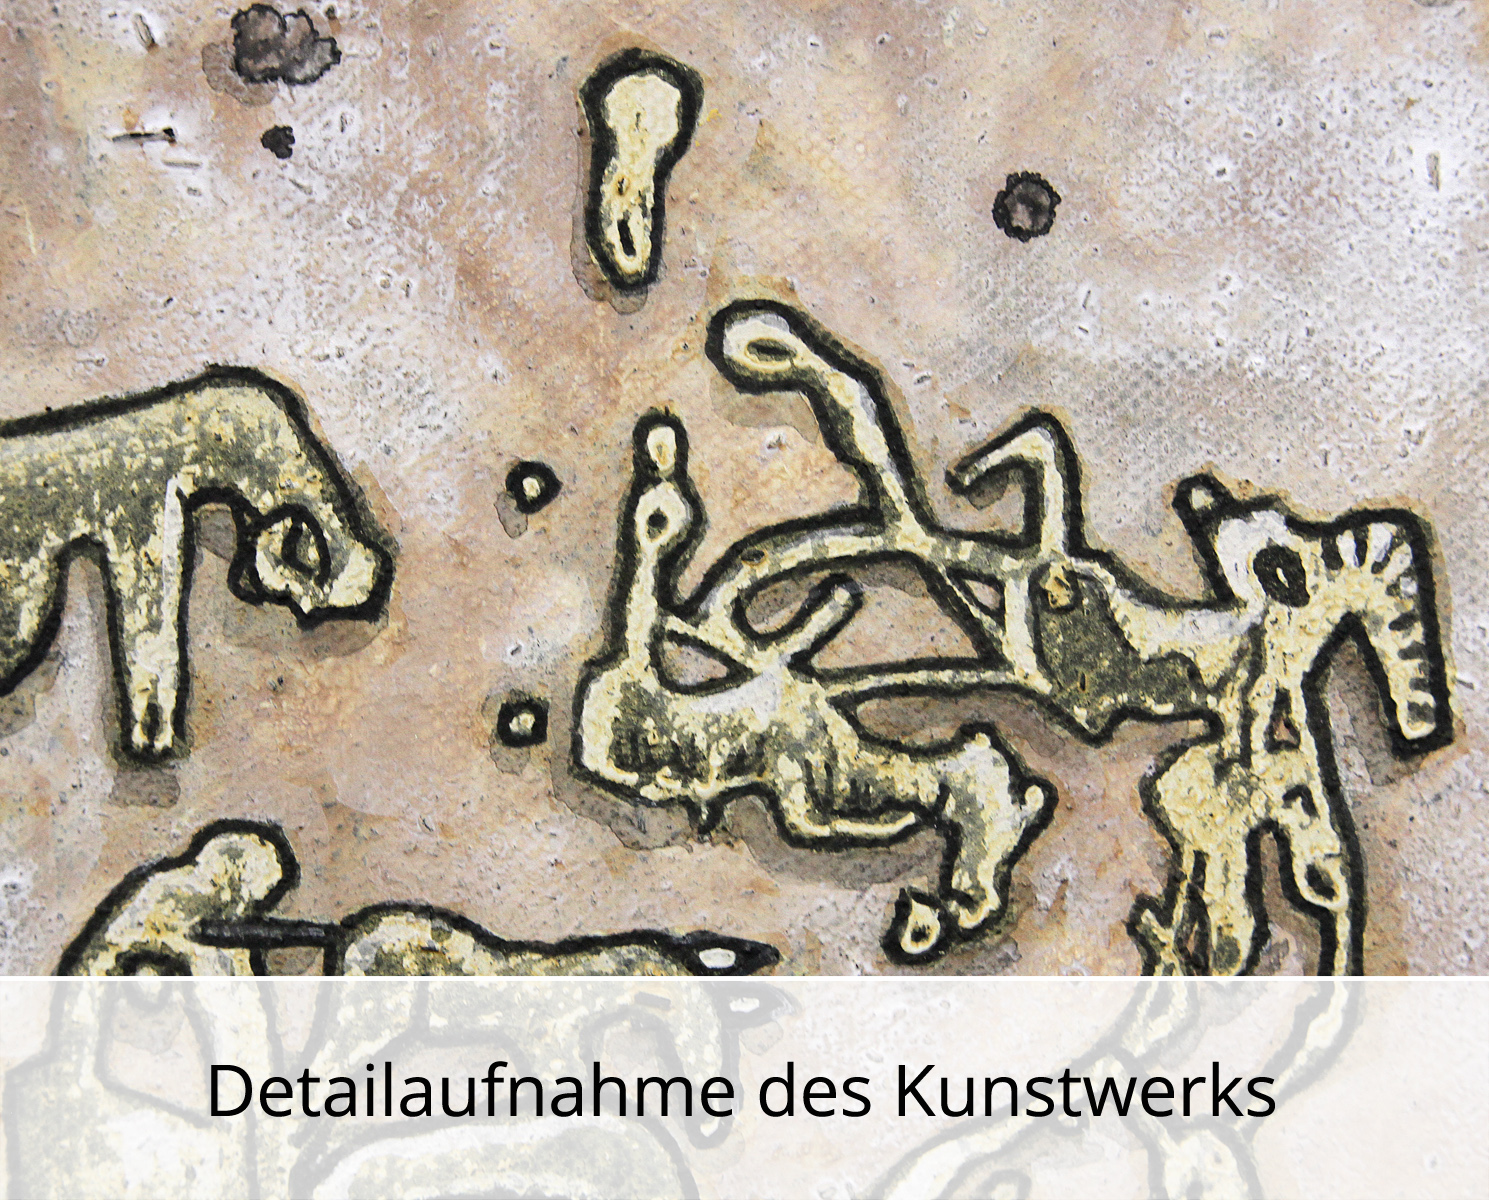 C. Blechschmidt: Die Ausgrabung, Original/Unikat, zeitgenössisches Acrylgemälde